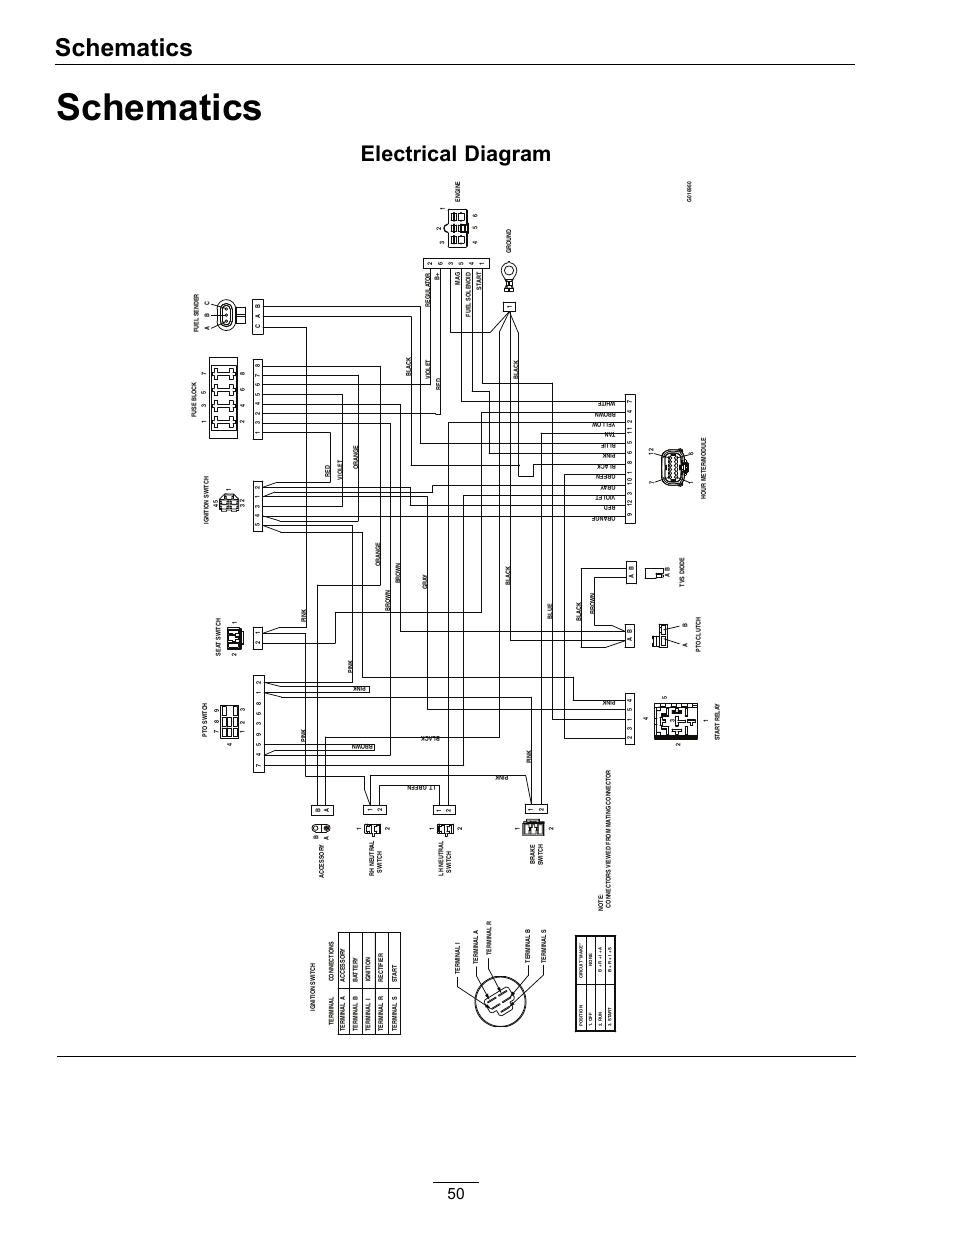 wells f30 wiring diagram